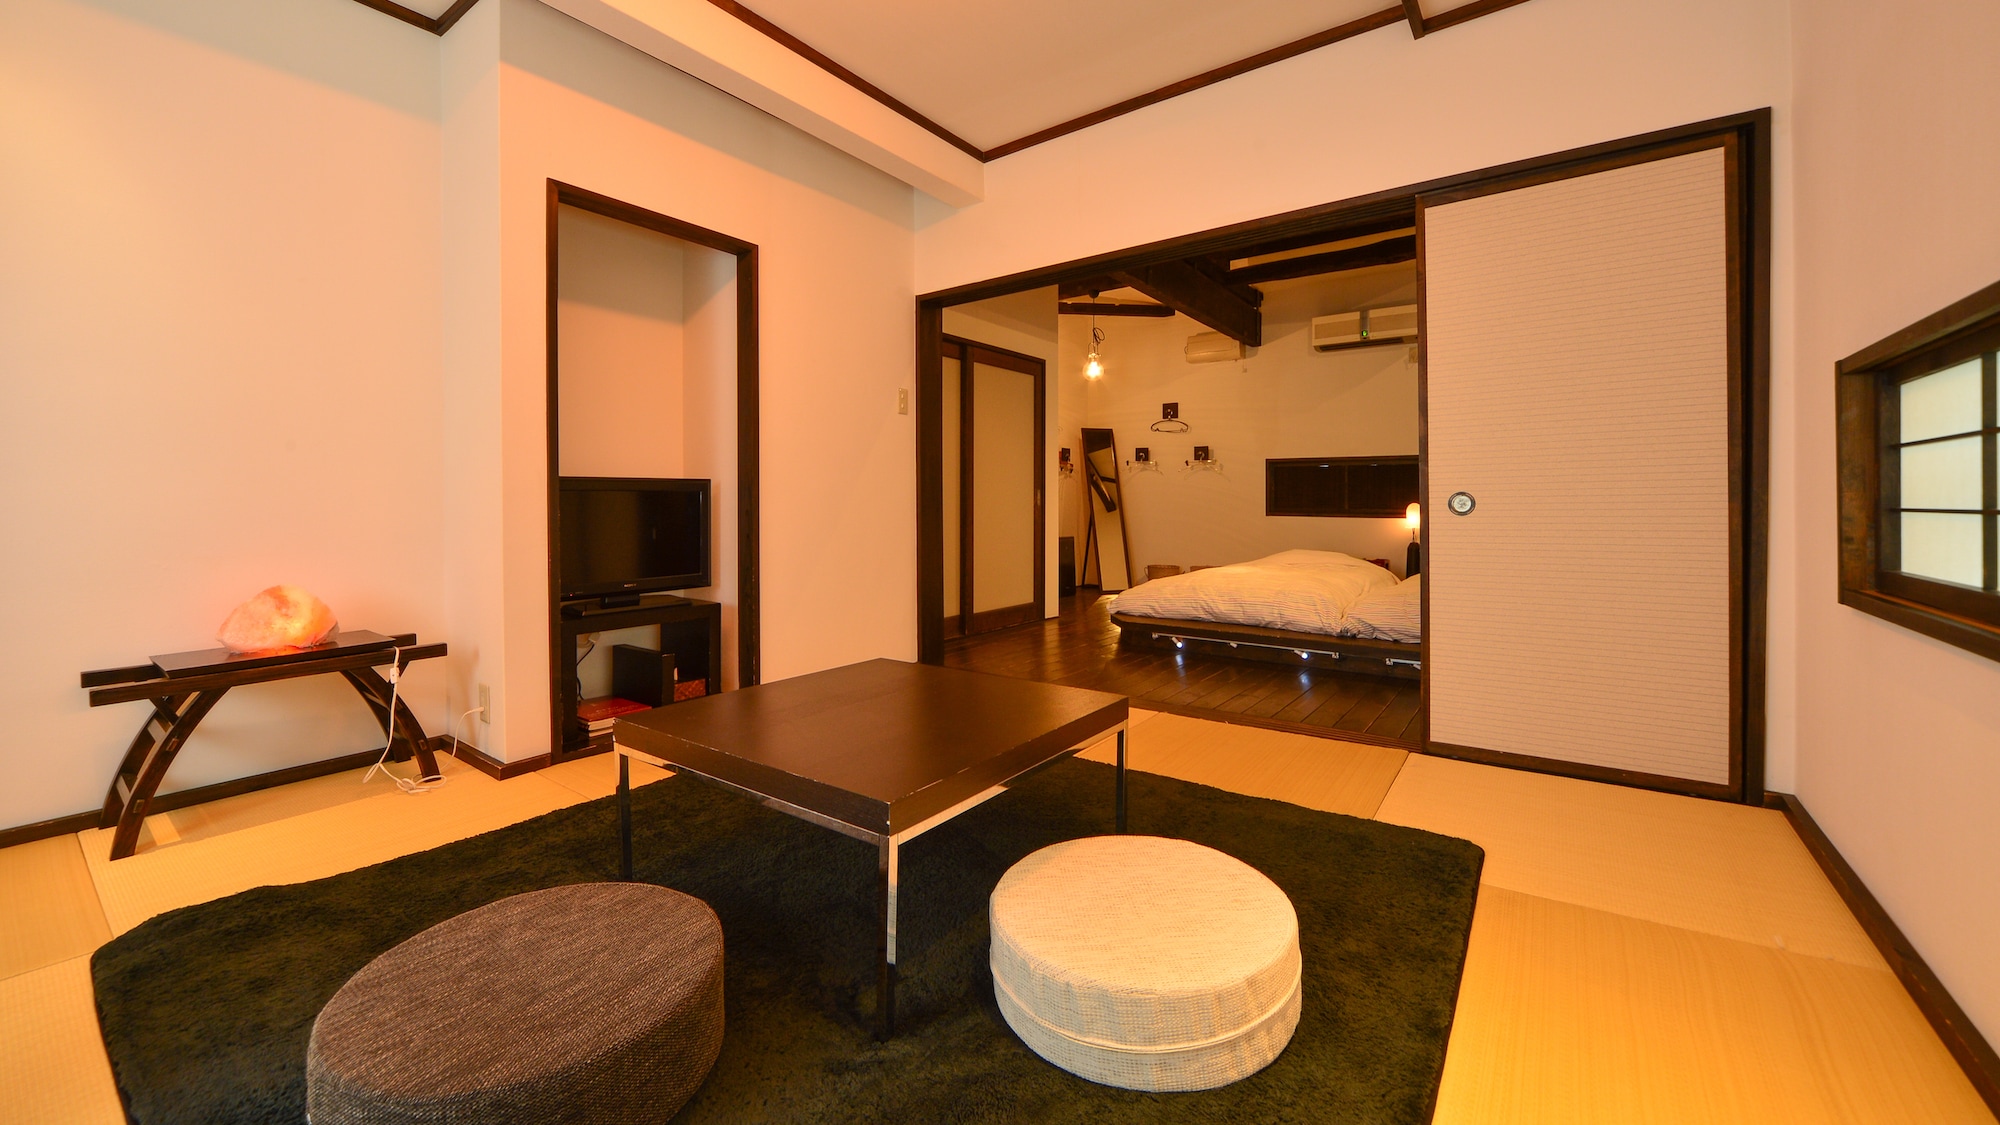 Kagirohi 日式和西式房間 設計師風格的日式房間 8 張榻榻米 + 臥室 8 張榻榻米